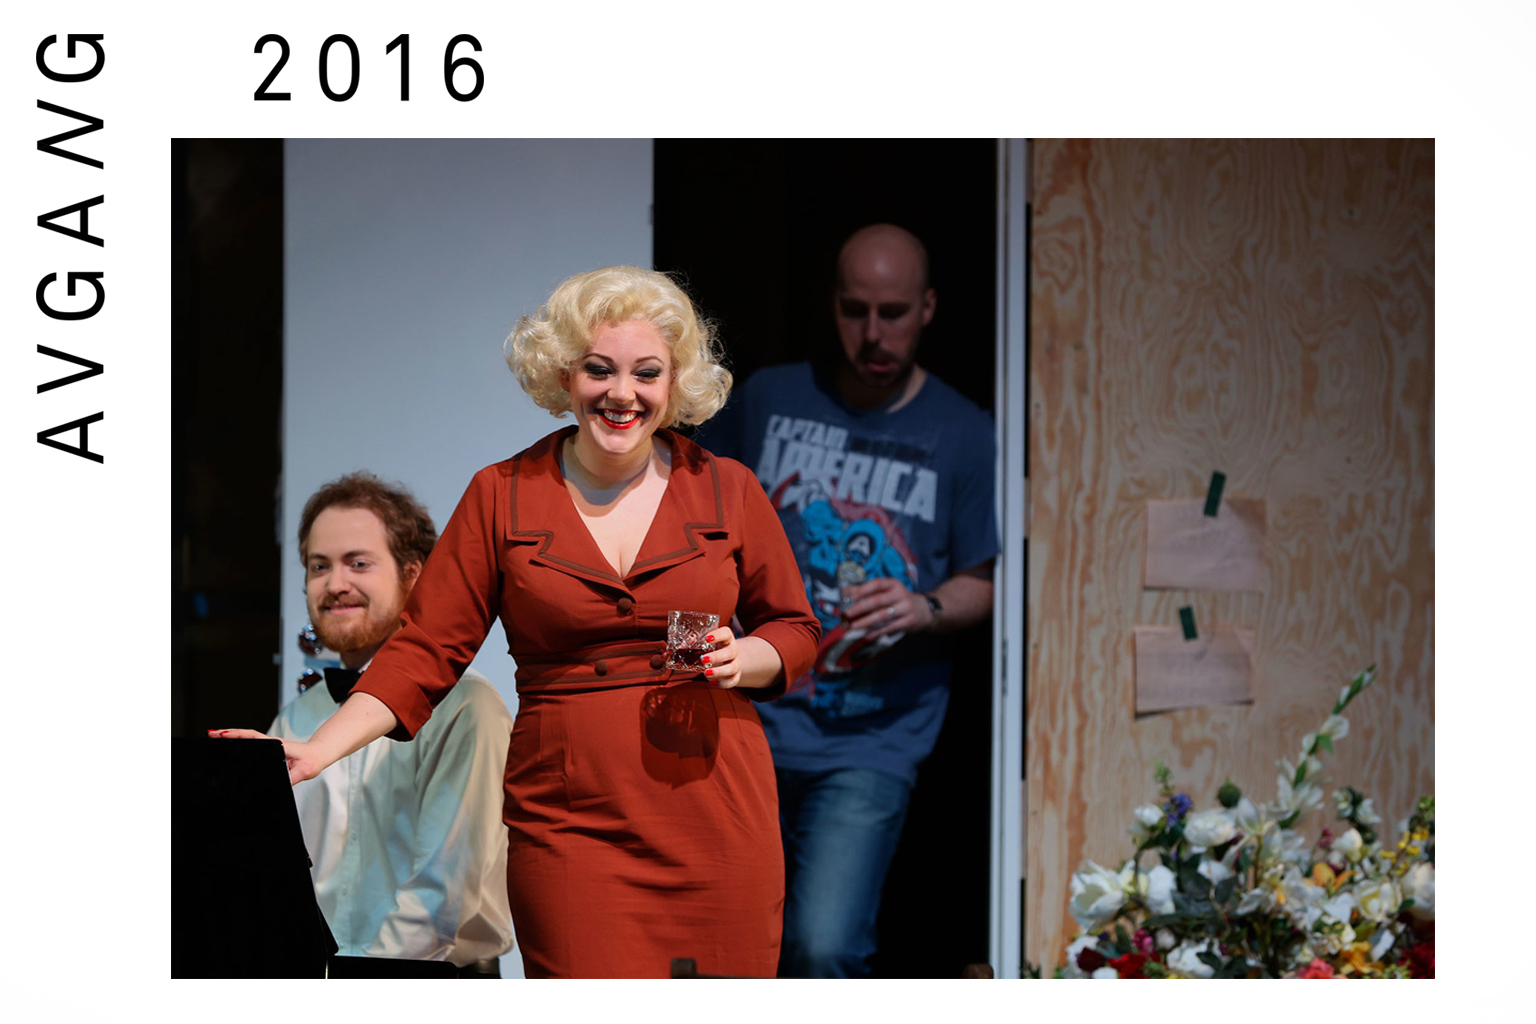 Avgang 2016: Ariadne auf Naxos – Vorspiel og Gianni Schicchi 